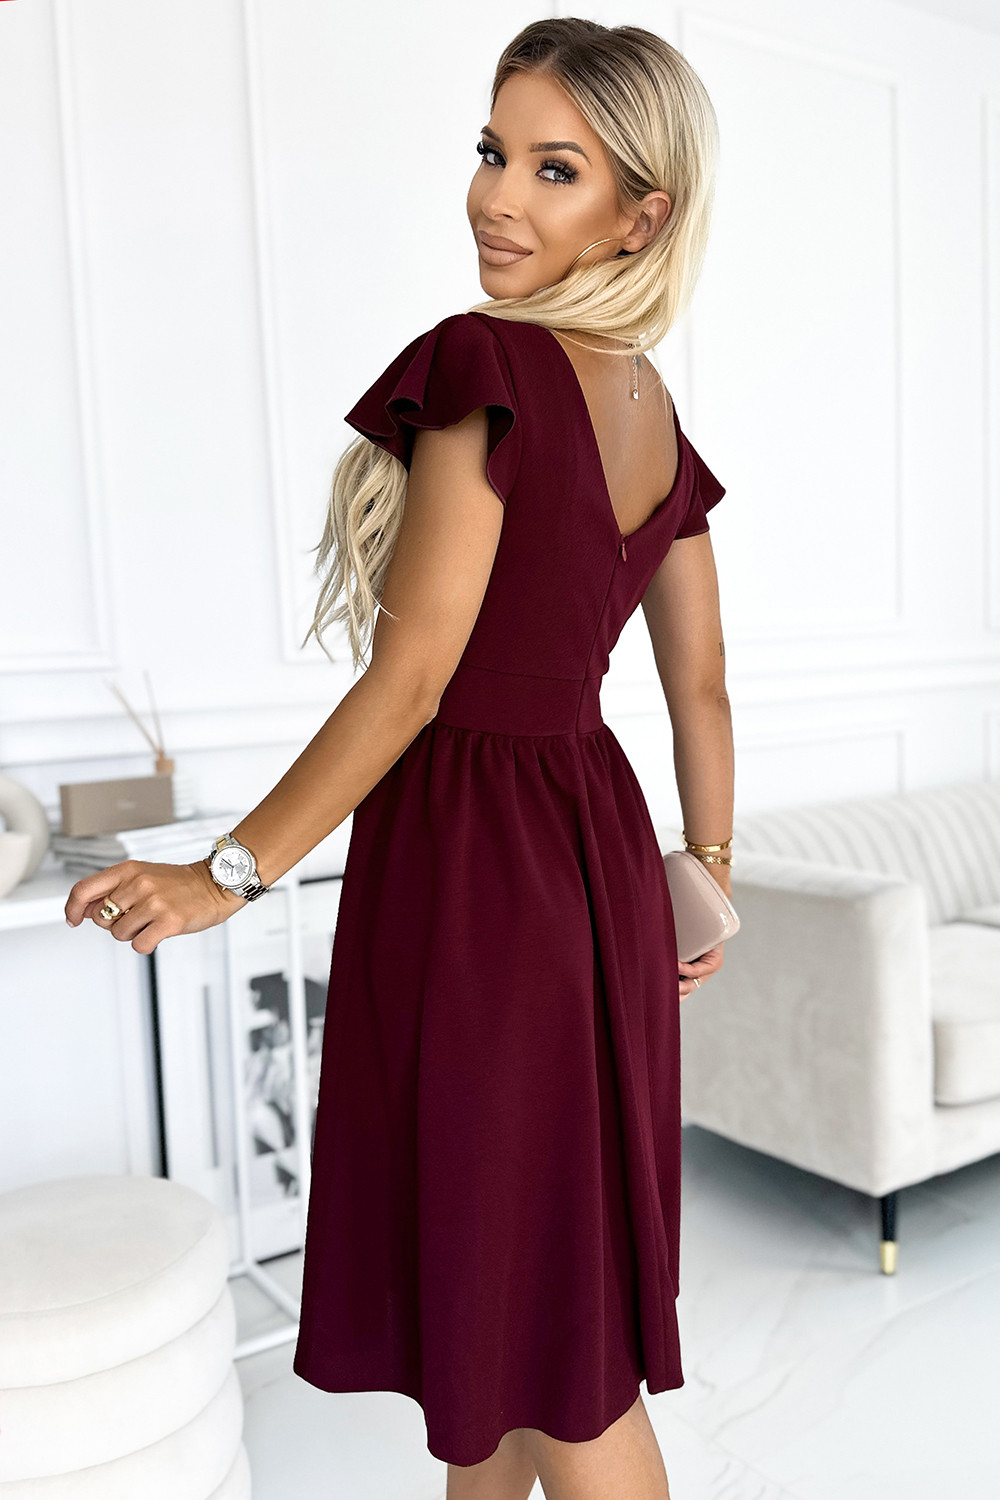 MATILDE - Dámské šaty ve vínové bordó barvě s výstřihem a krátkými rukávy 425-4 XL